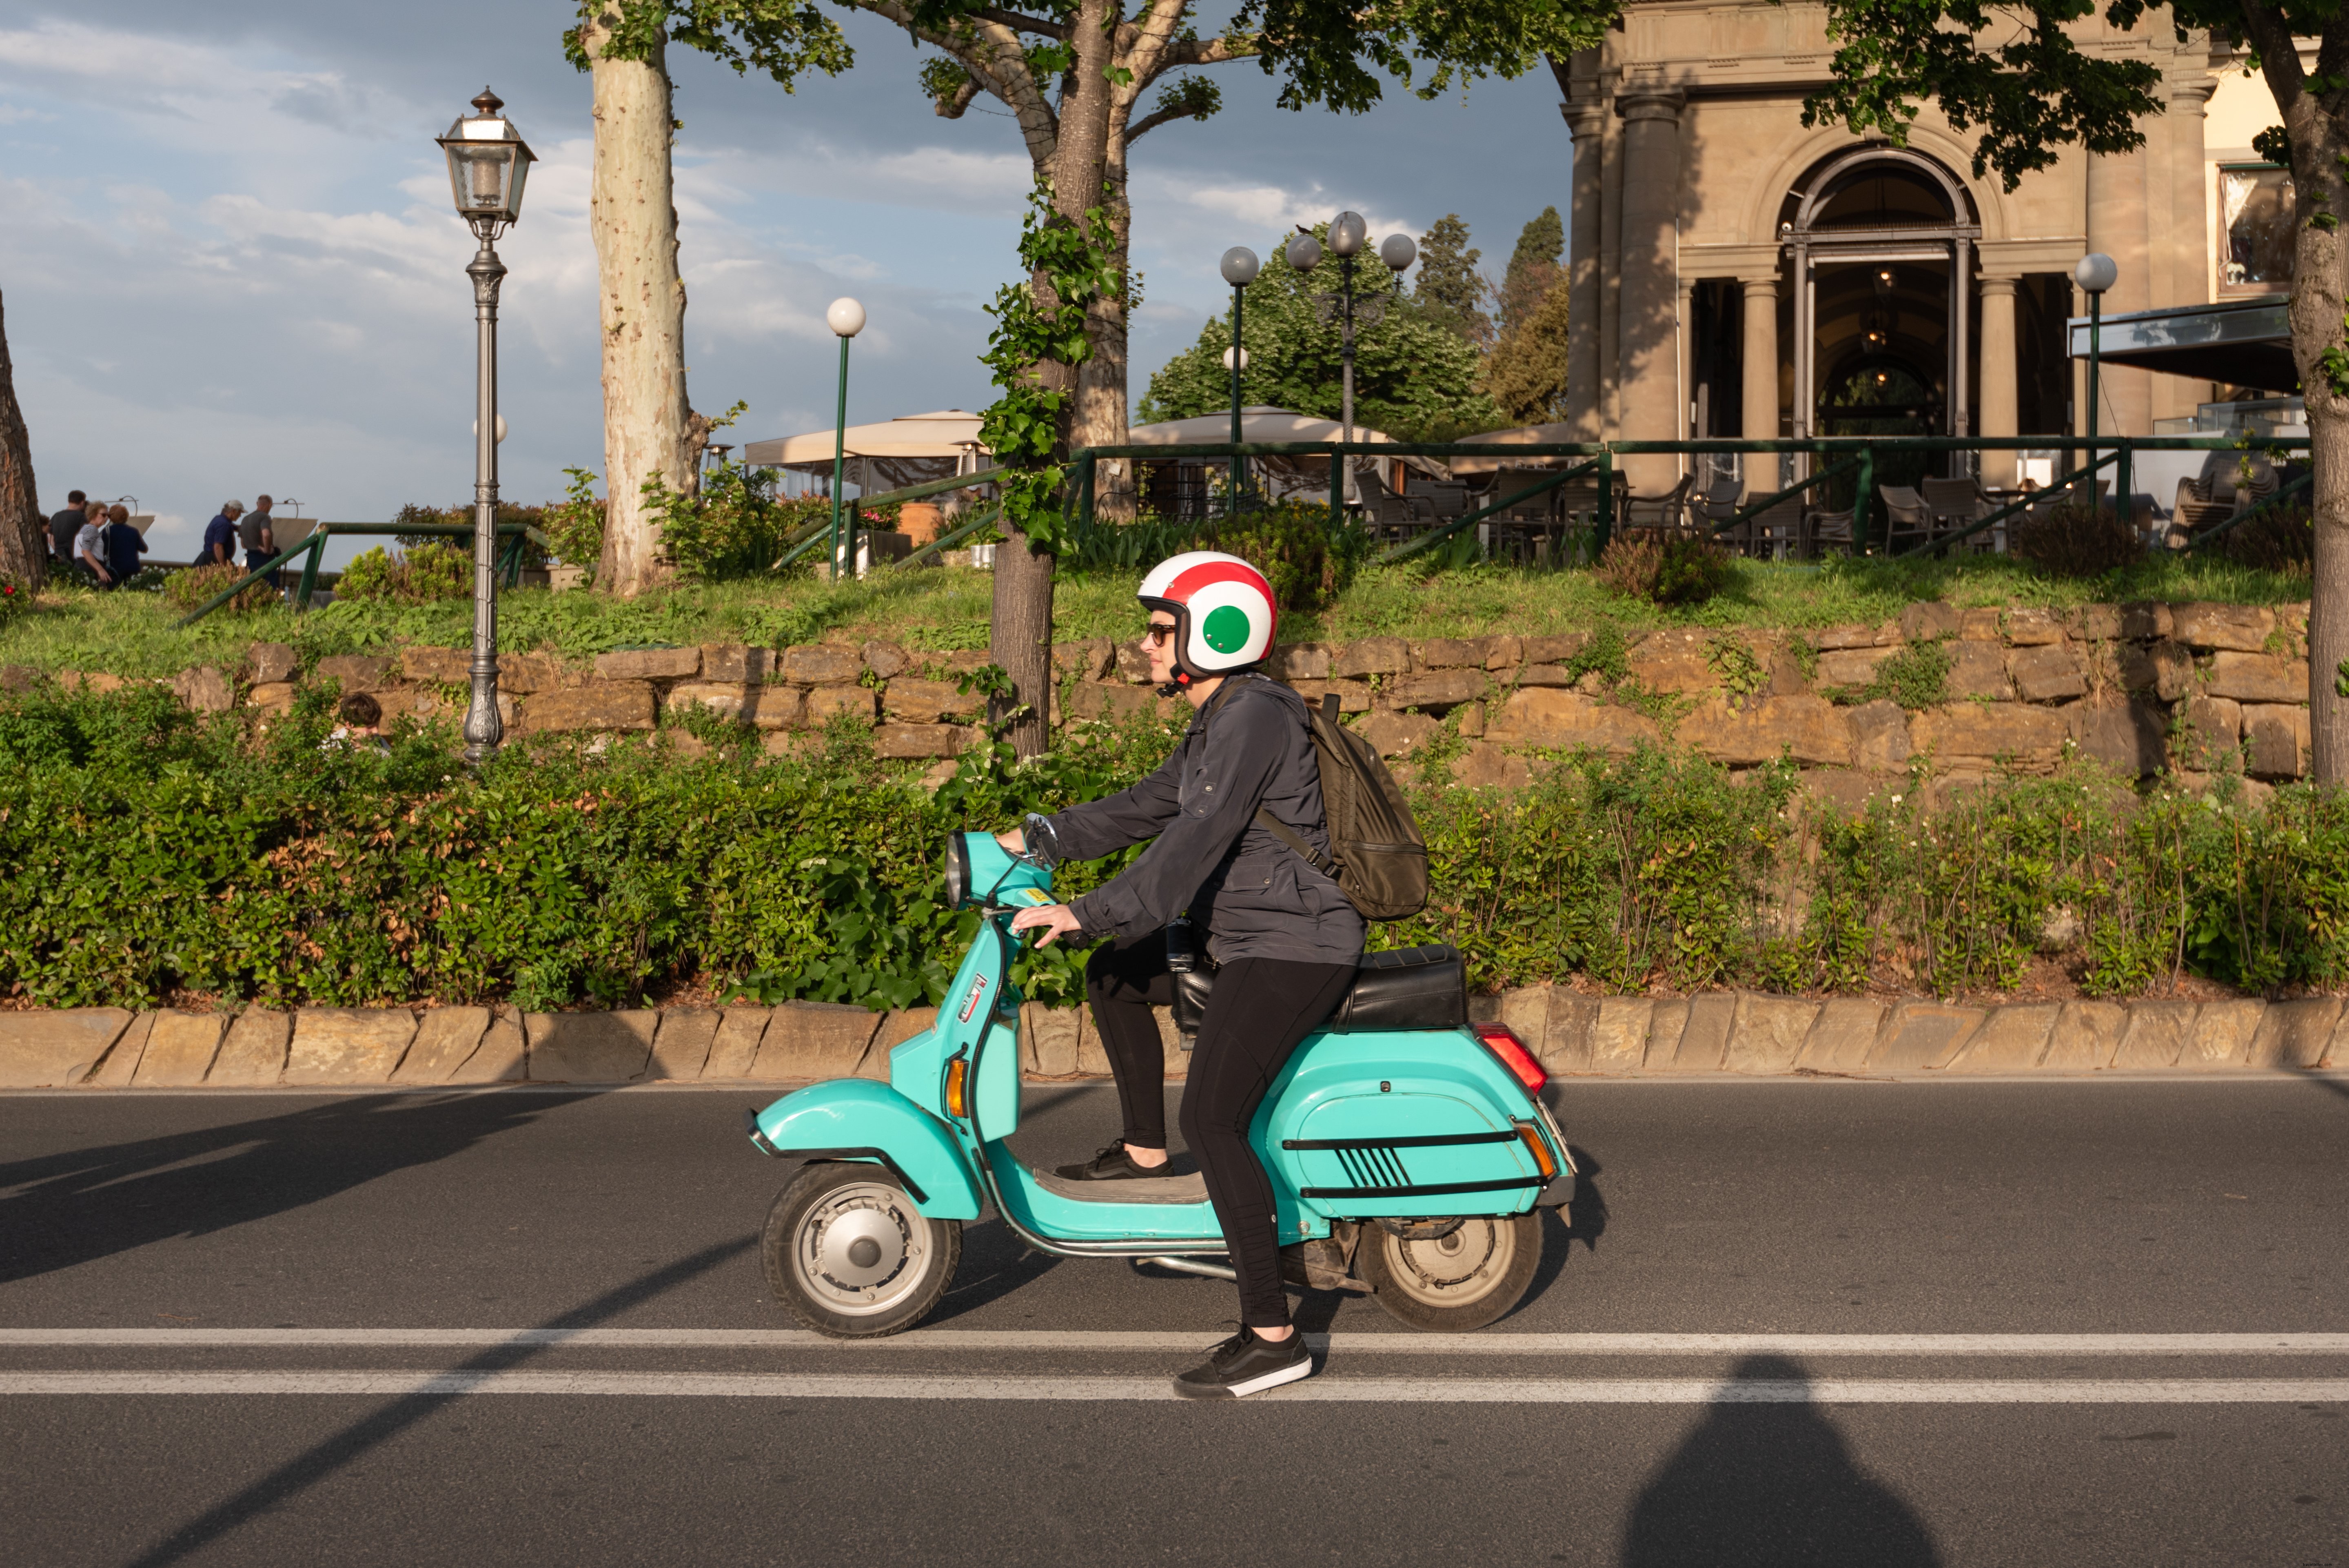 Une femme sur un cyclomoteur turquoise sur une autoroute Photo